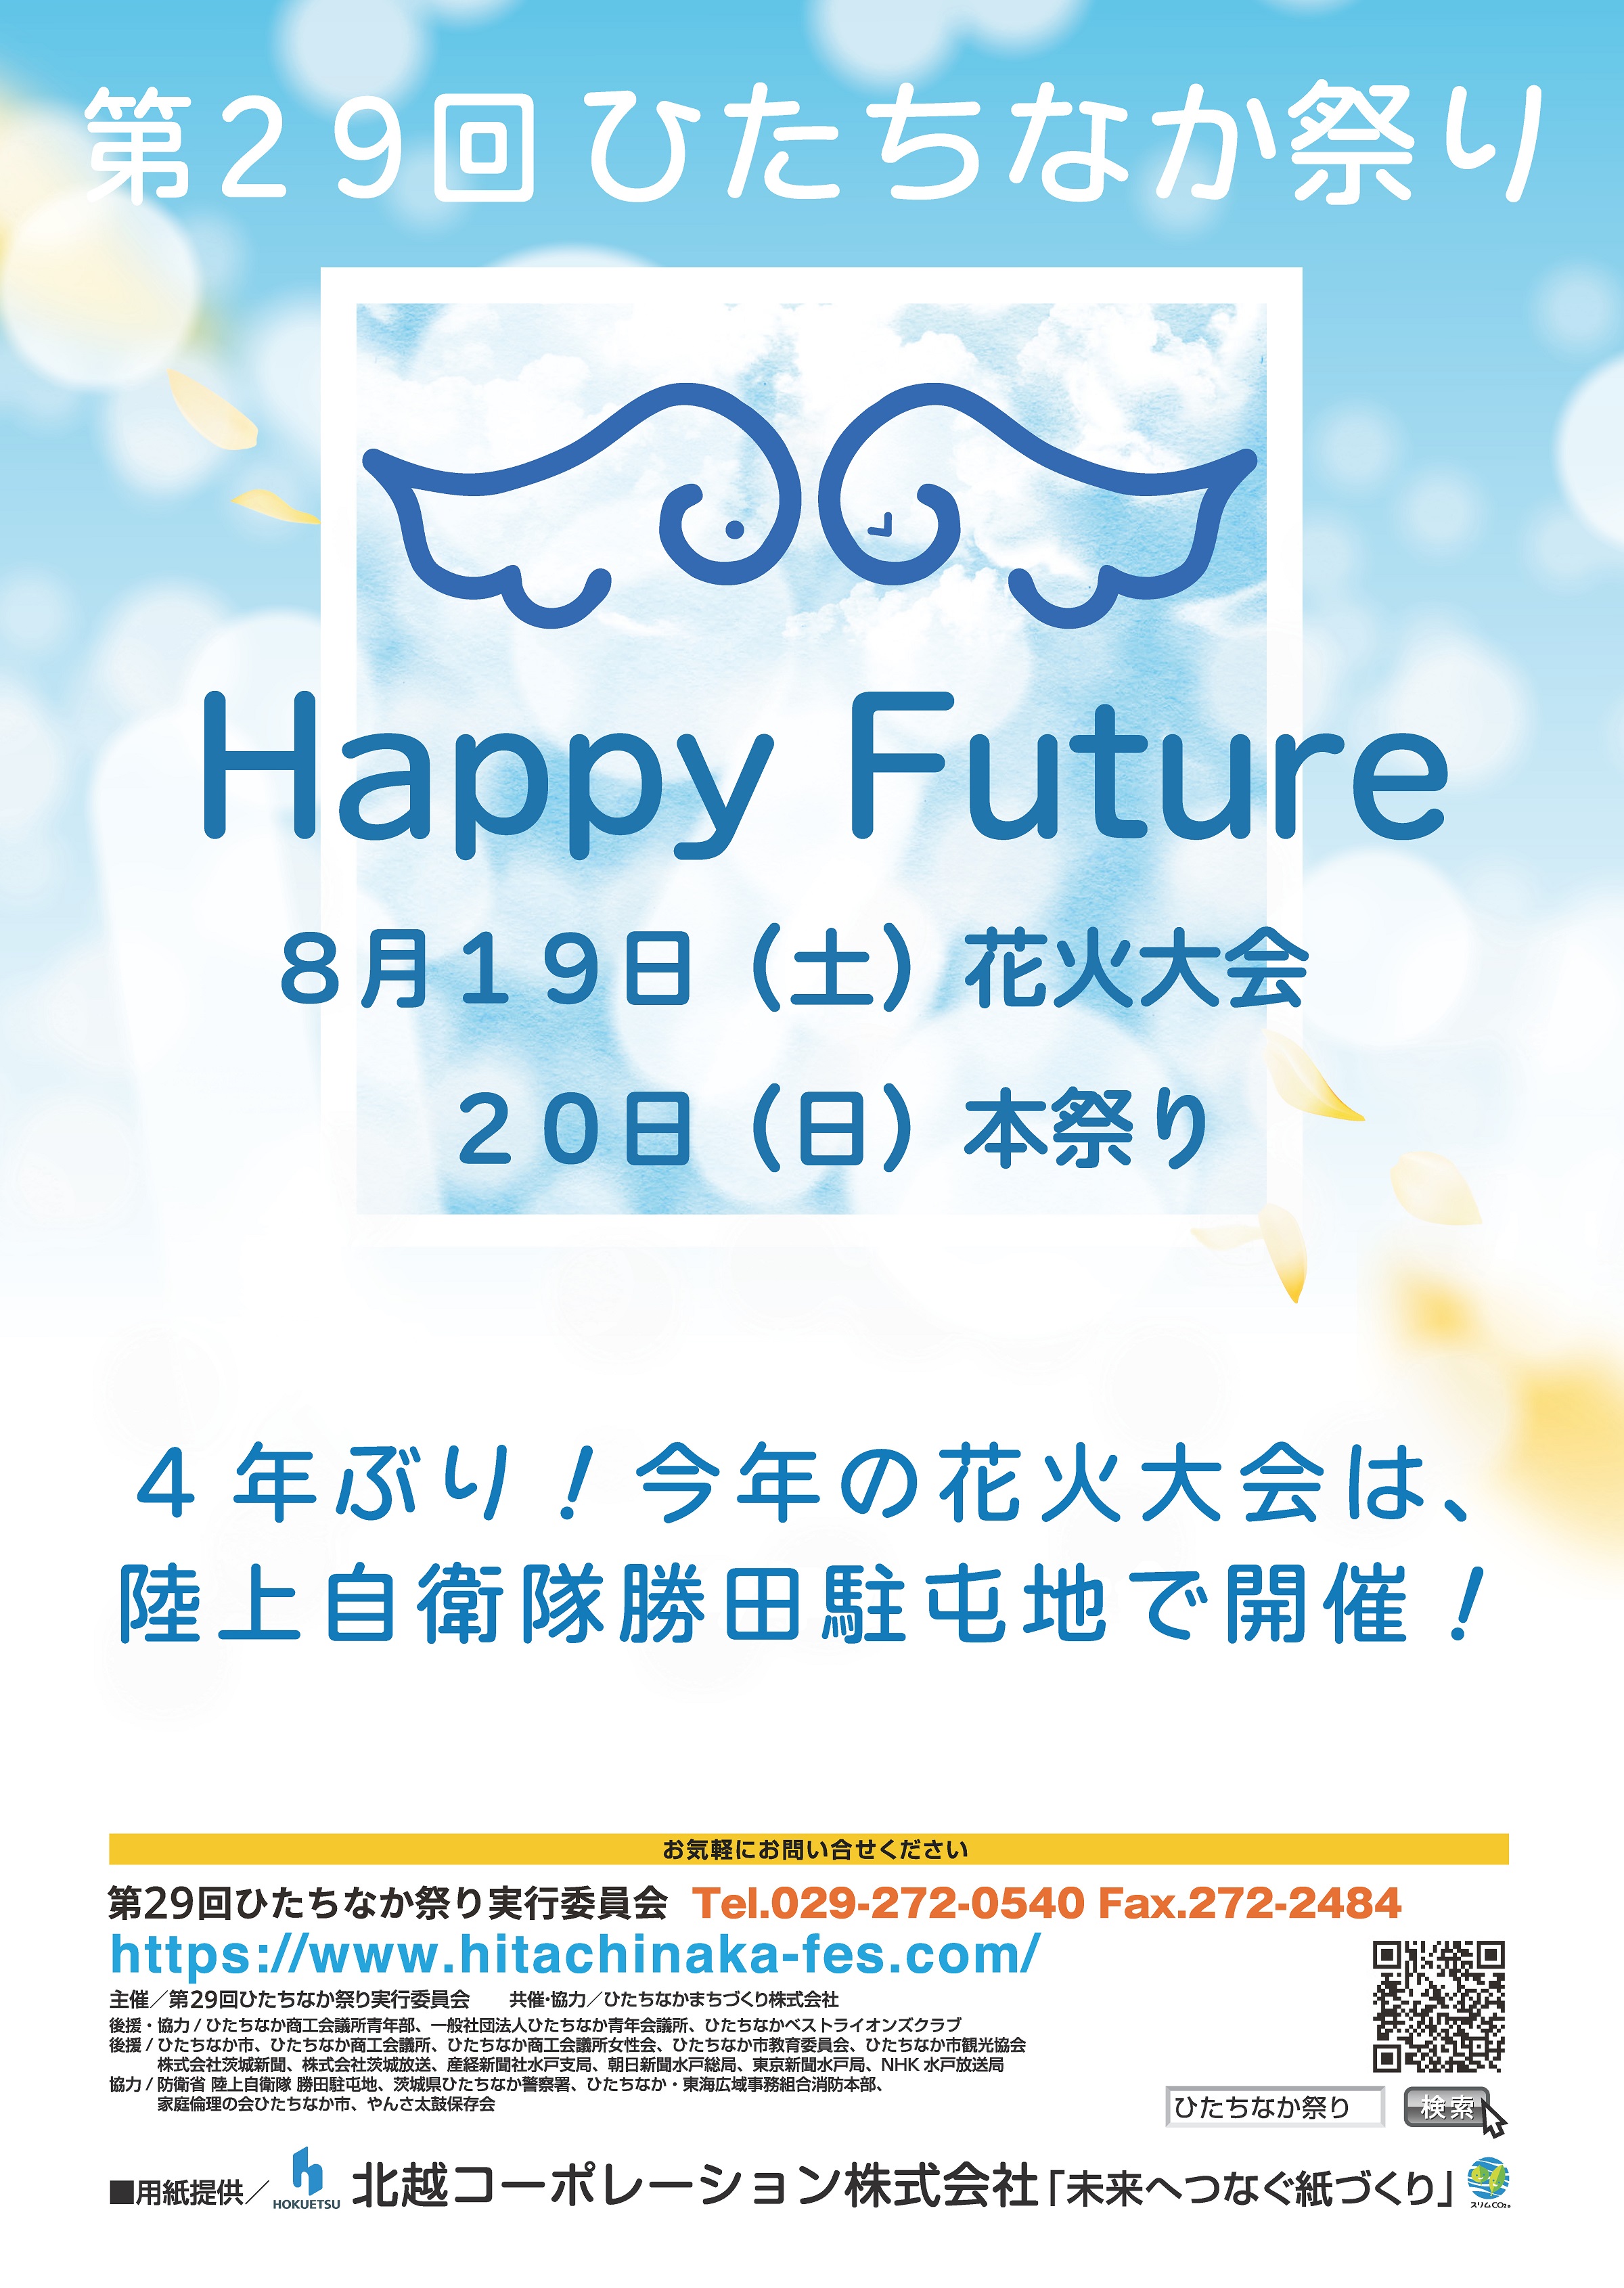 Happy Future 第29回ひたちなか祭り